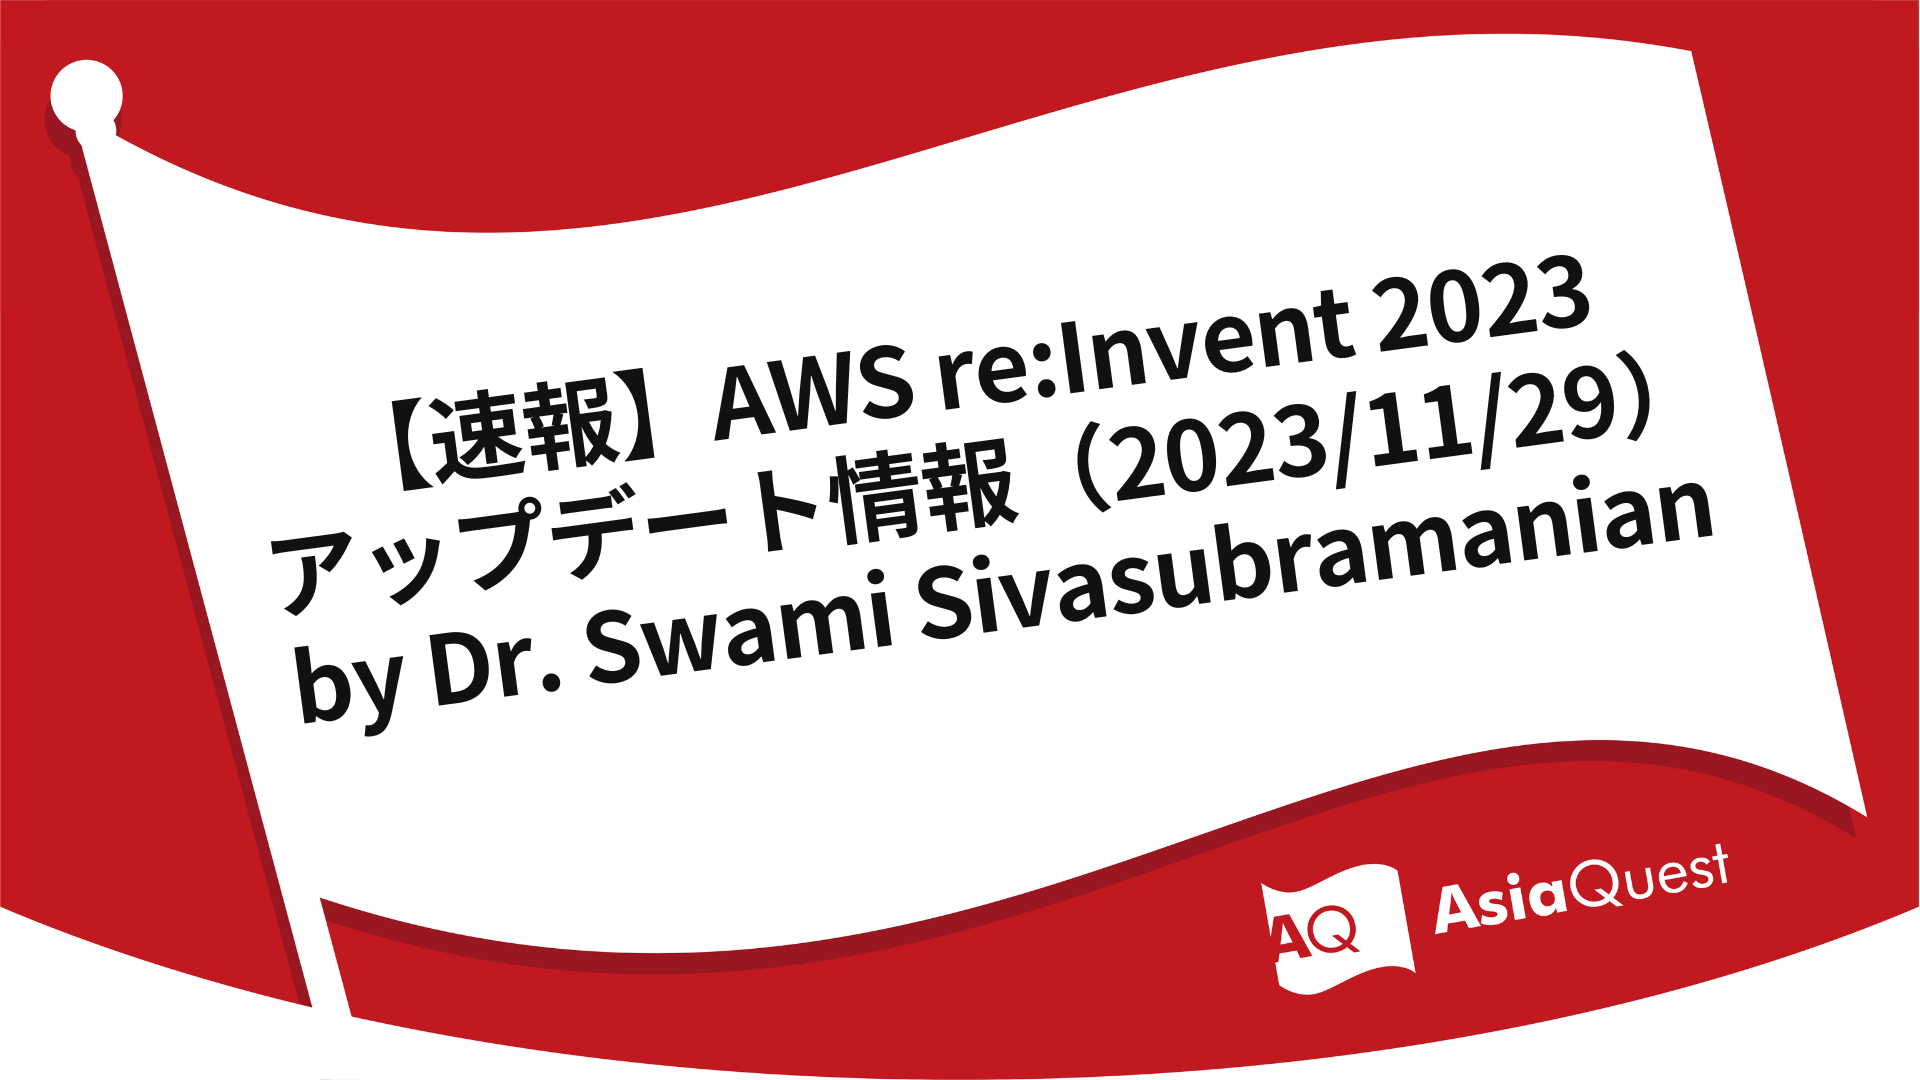 【速報】AWS re:Invent2023 アップデート情報（2023/11/29）by Dr. Swami Sivasubramanian